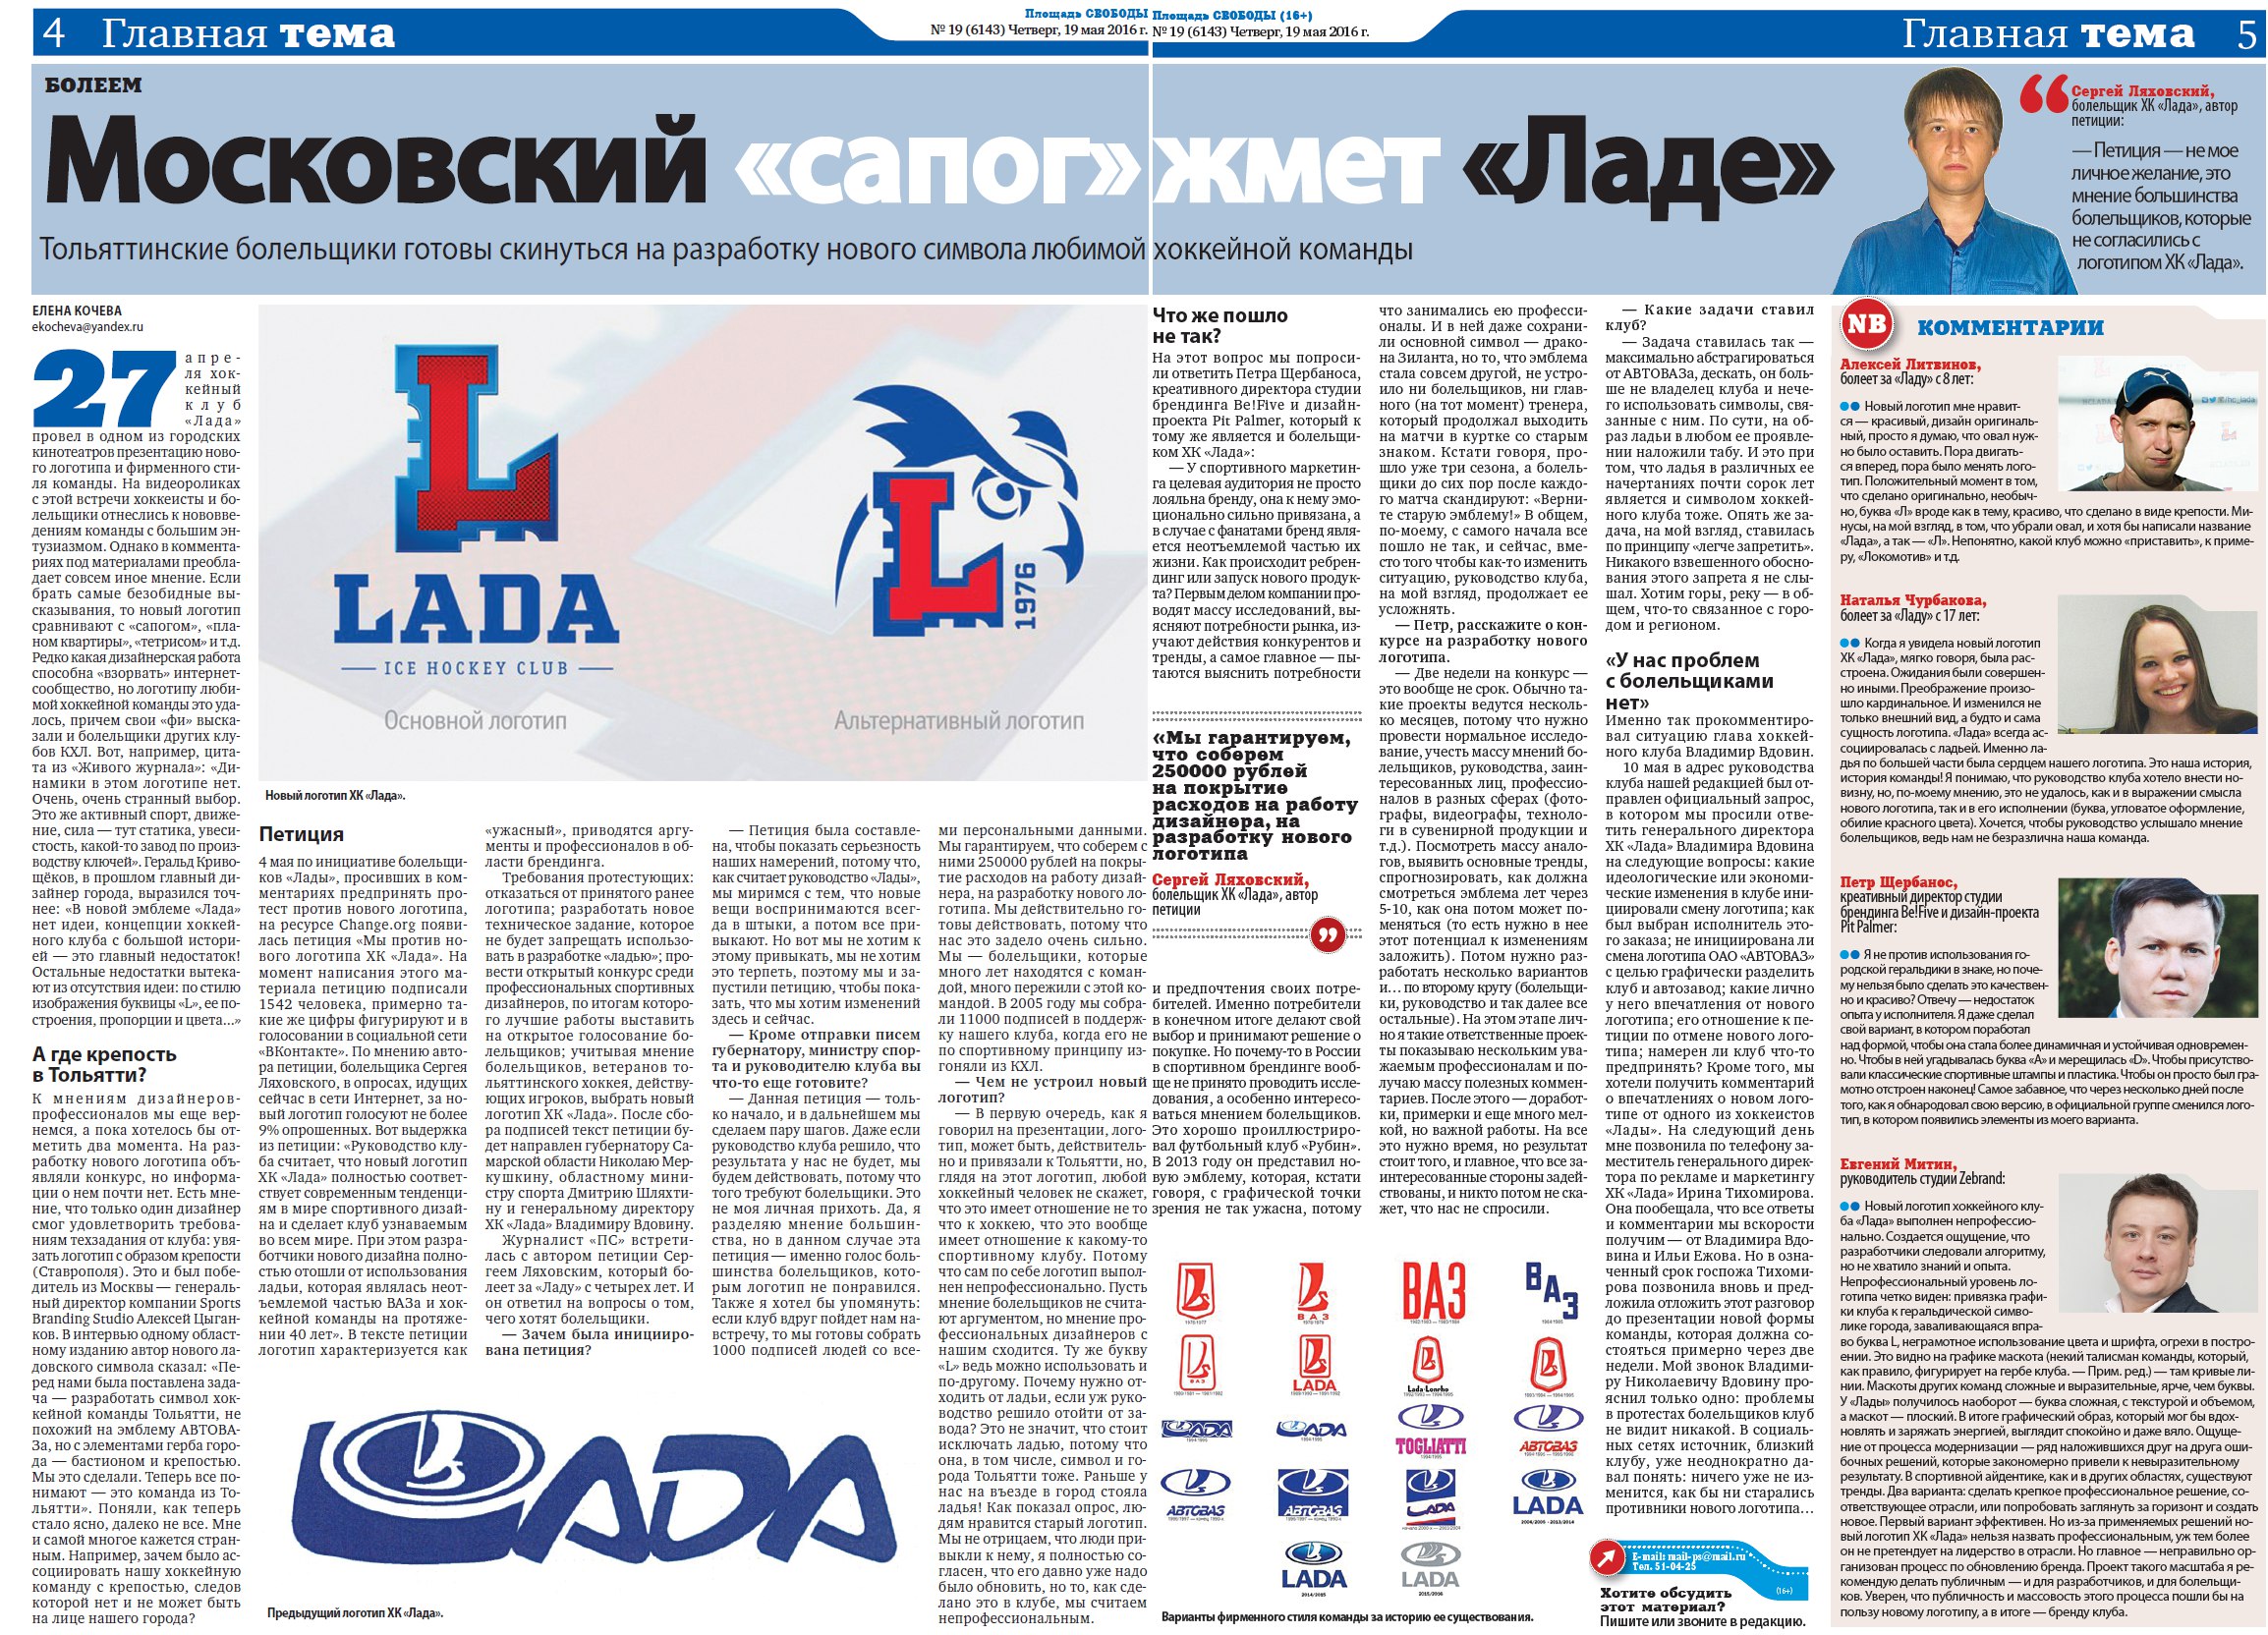 Болельщики ХК Лада готовы собрать 250 000 рублей на разработку нового логотипа!